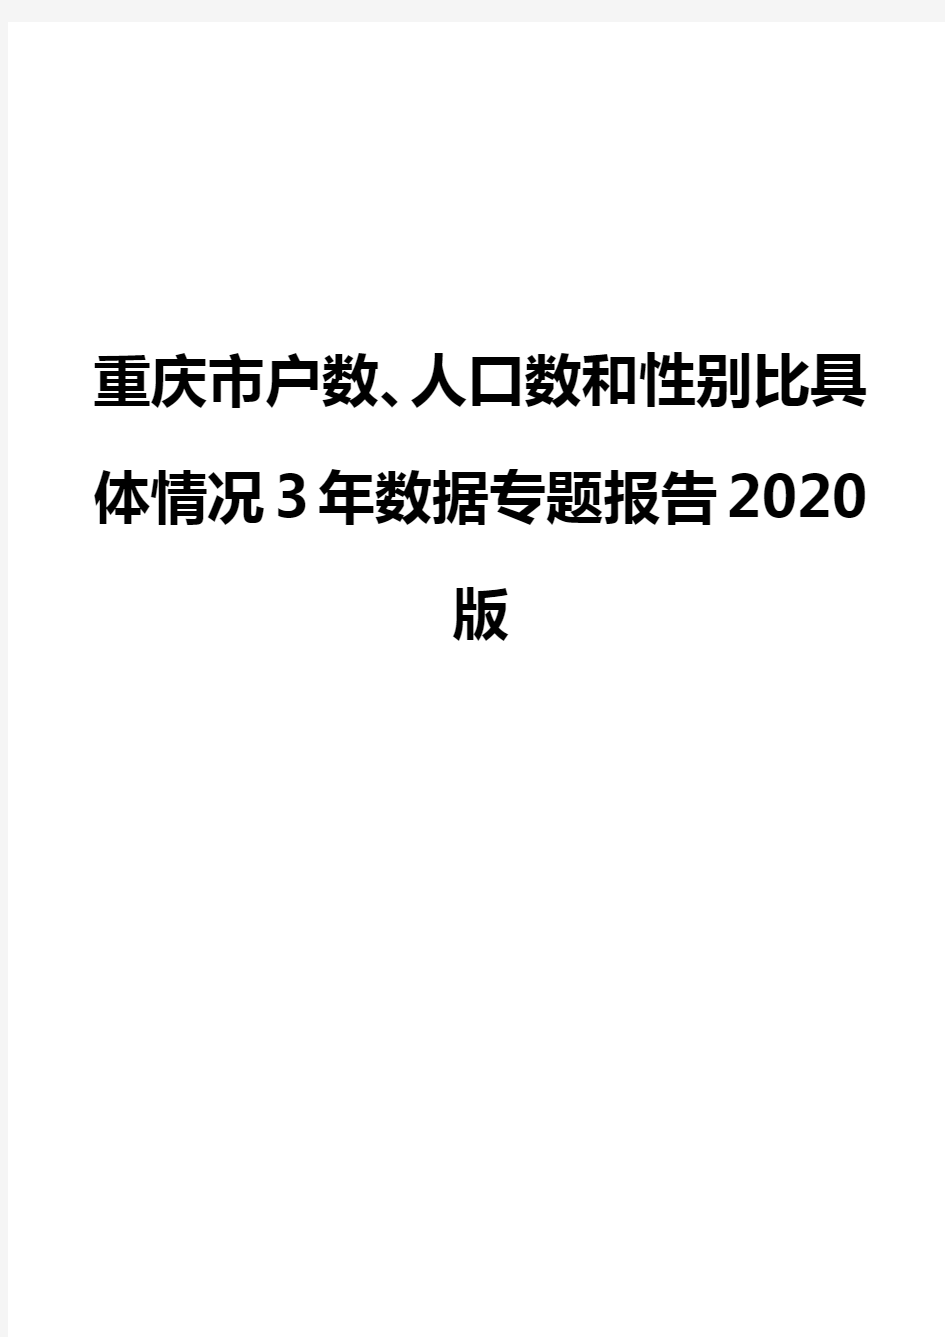 重庆市户数、人口数和性别比具体情况3年数据专题报告2020版